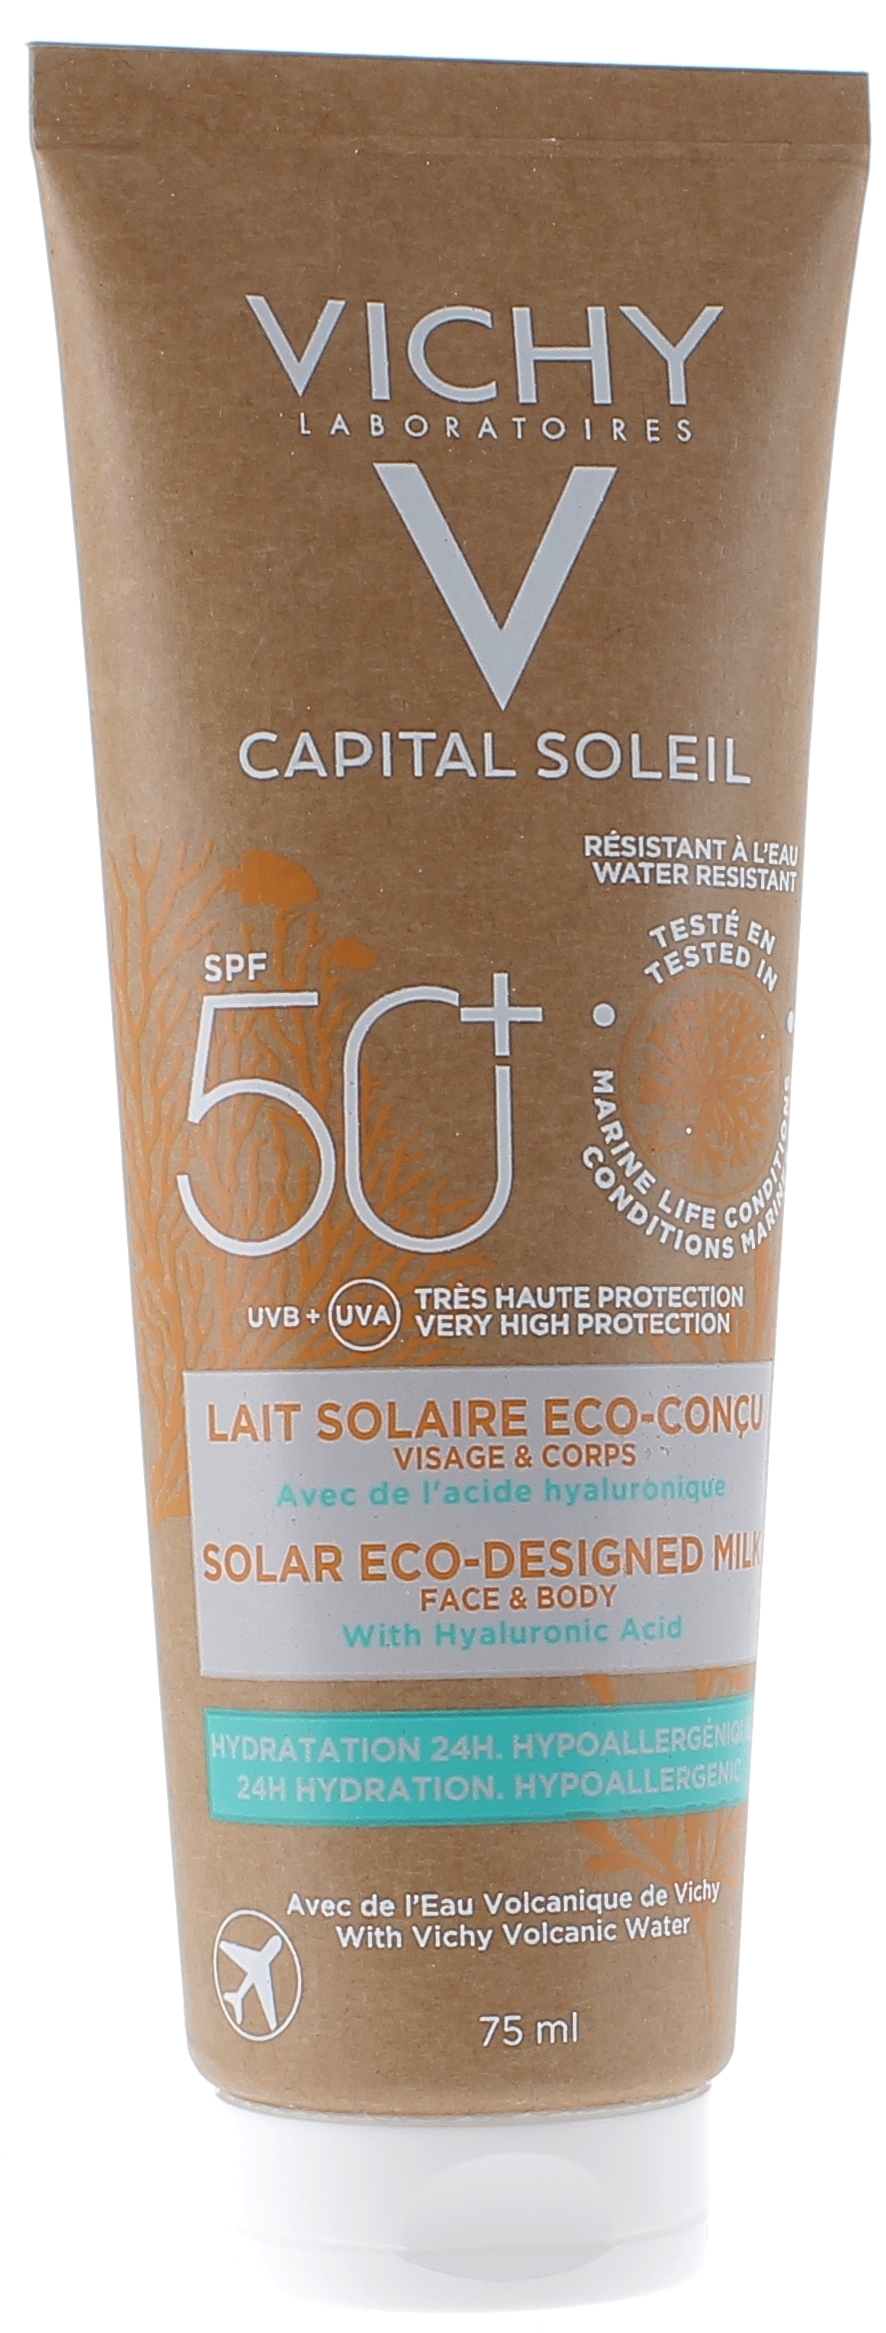 Capital Soleil Lait solaire éco-conçu SPF50+ Vichy - tube de 75ml format voyage